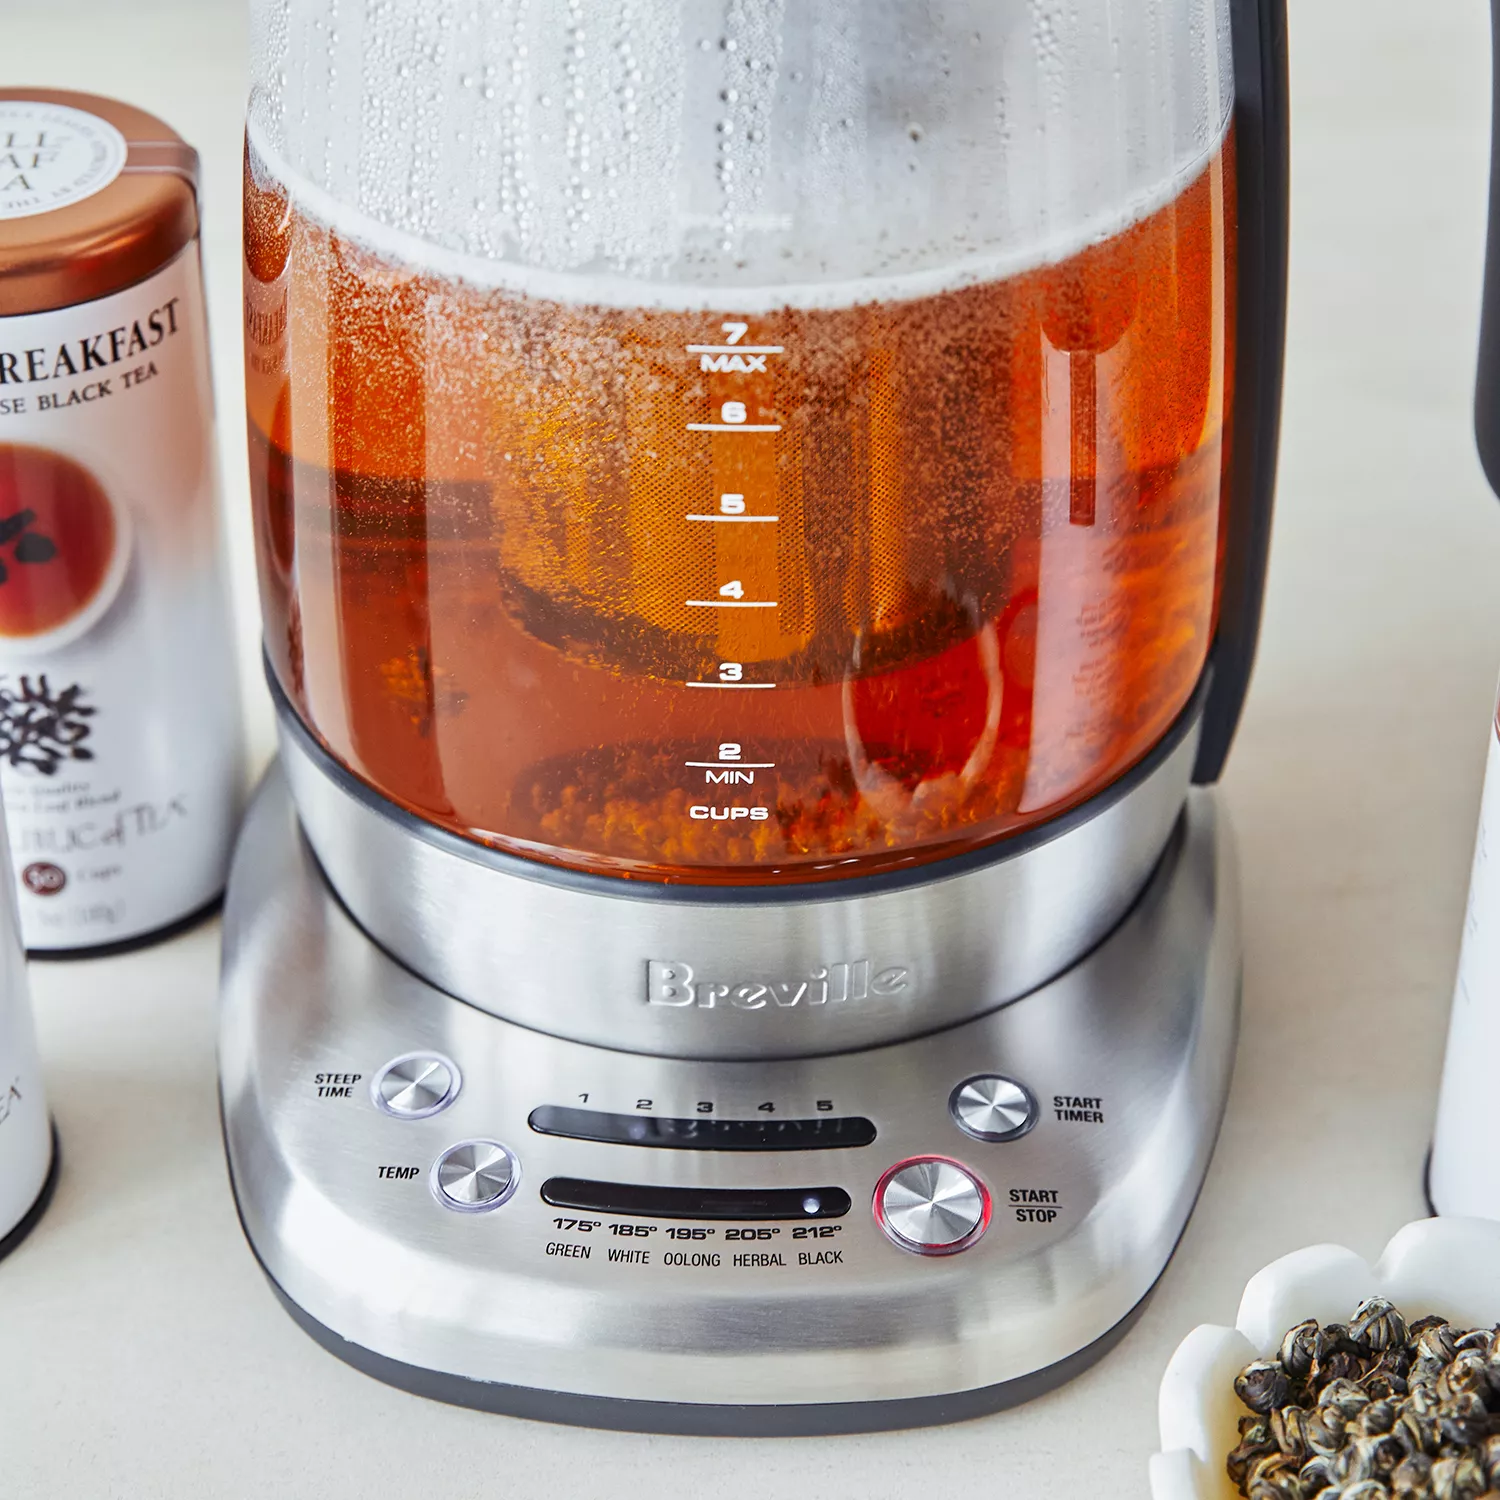 the Breville Smart Tea Infuser™